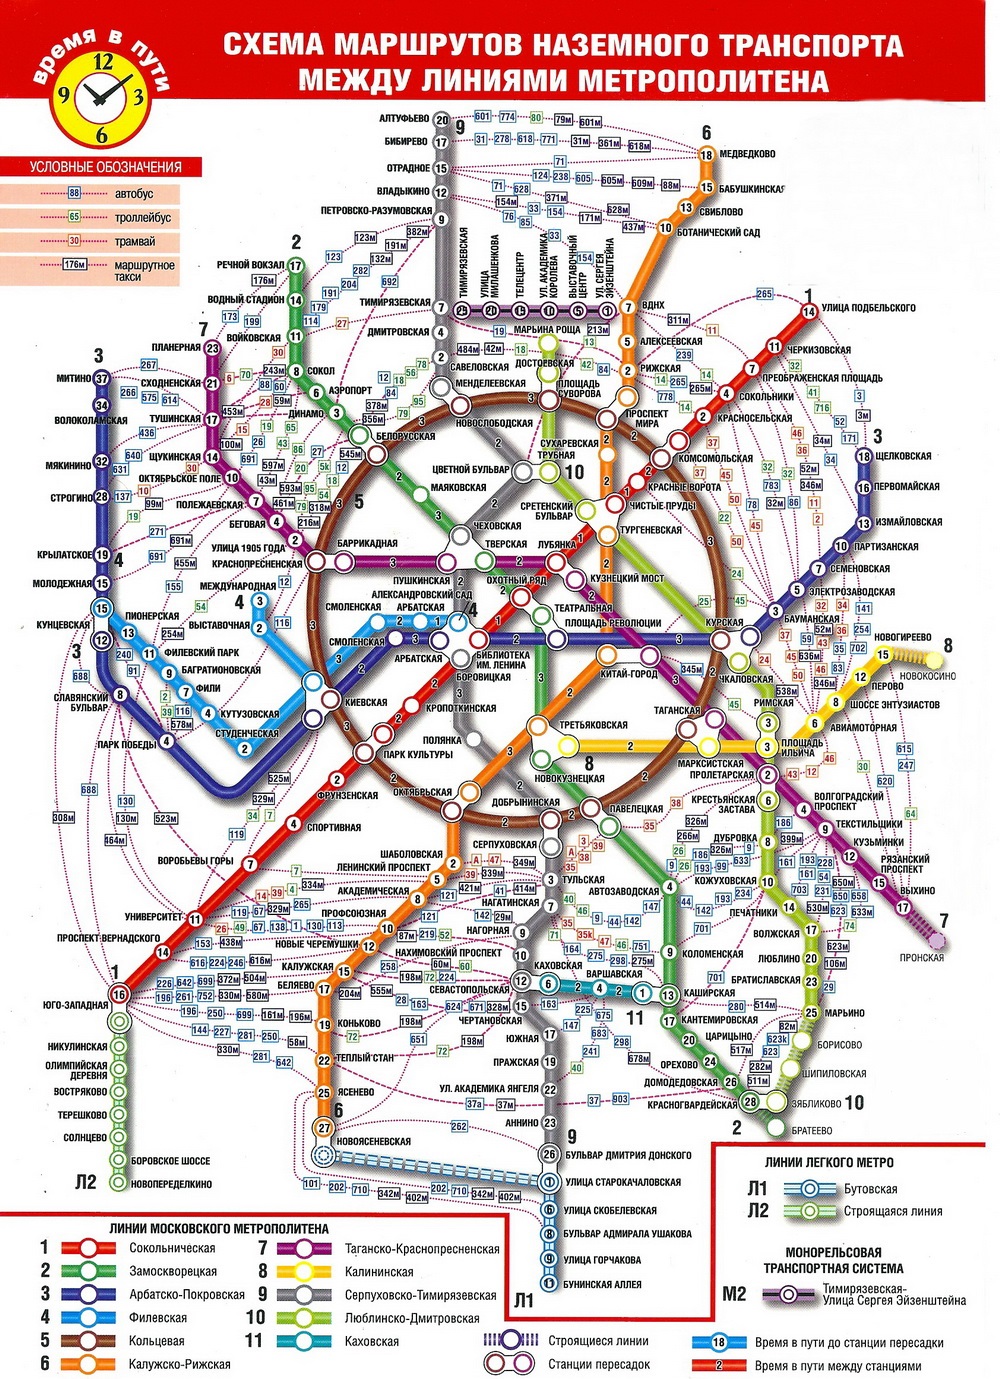 Карта центра москвы с улицами и станциями метро pdf скачать